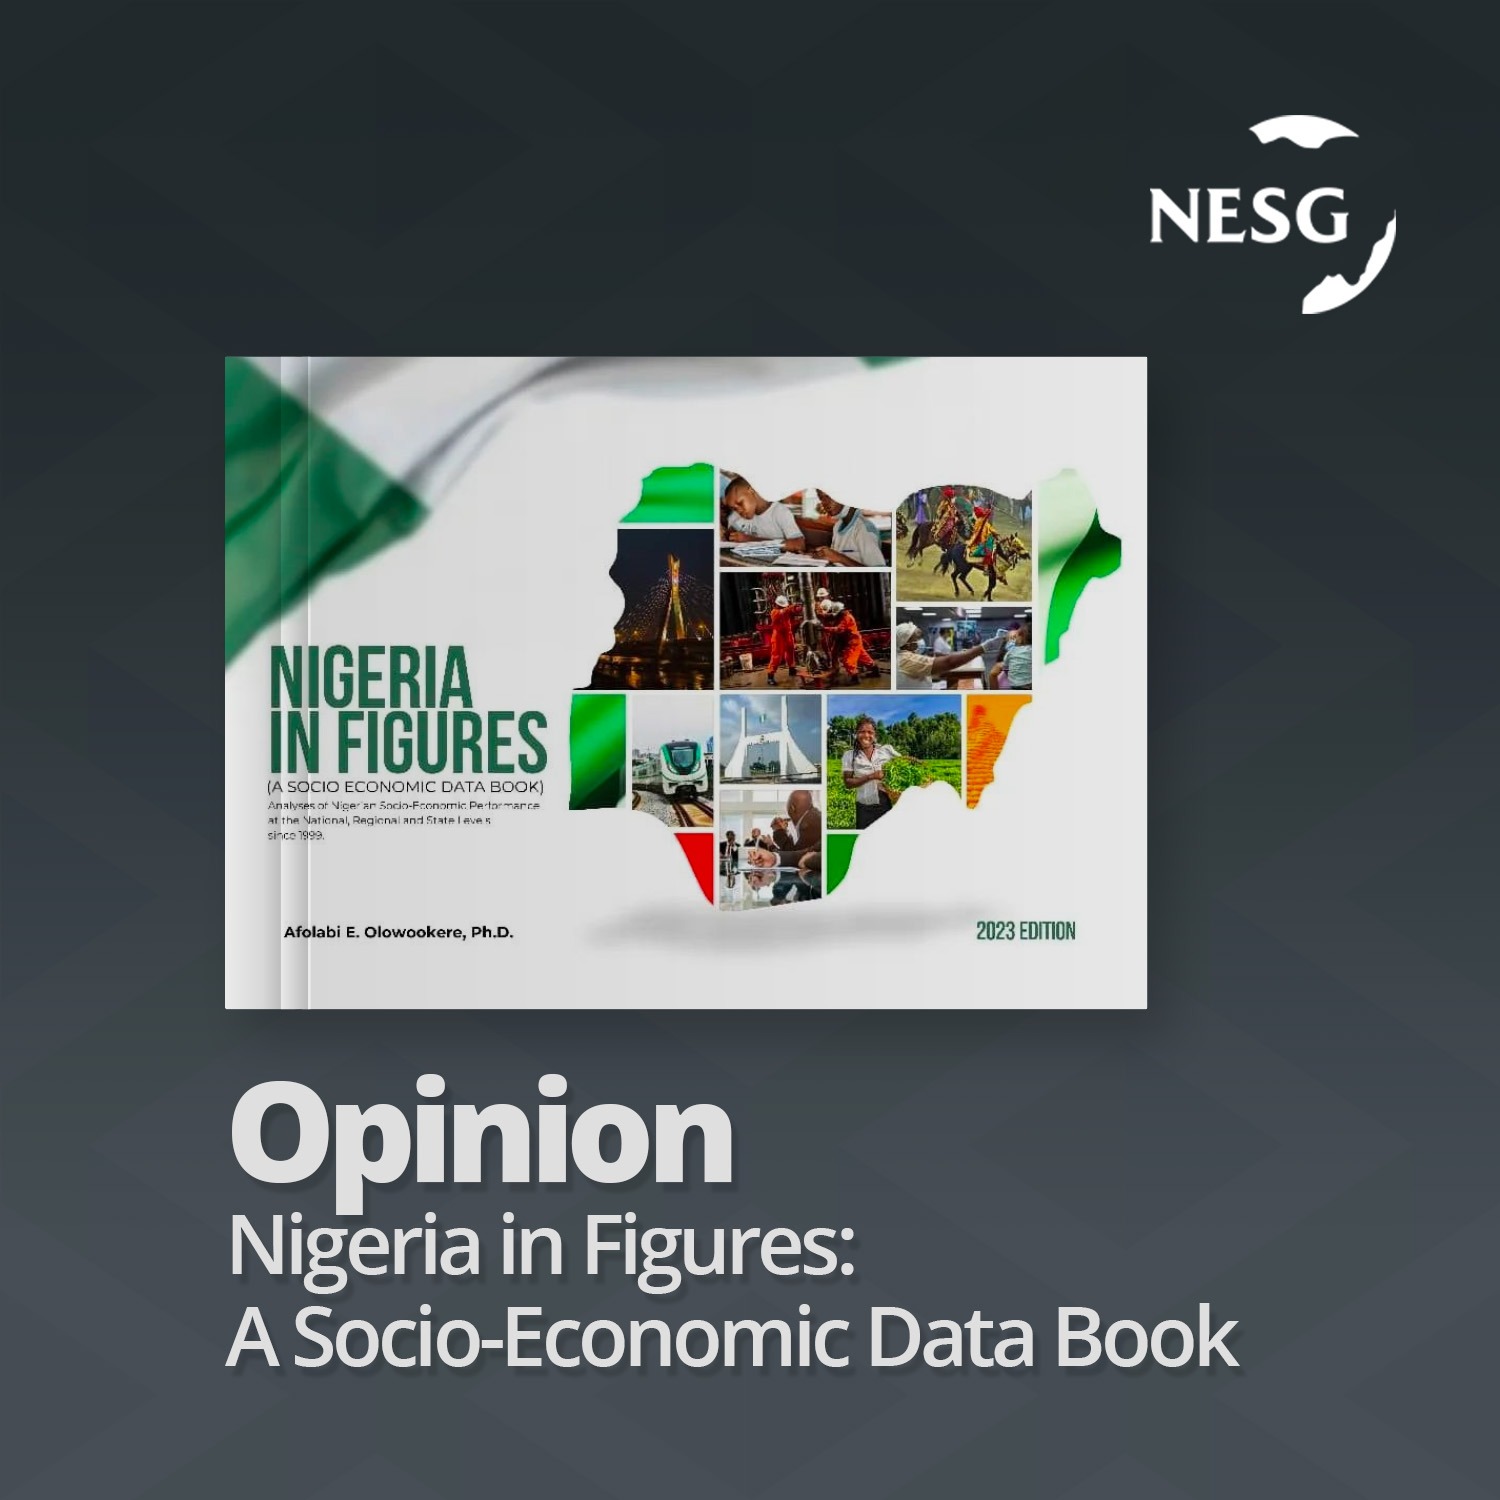 Opinion - Nigeria in Figures: A Socio-Economic Data Book